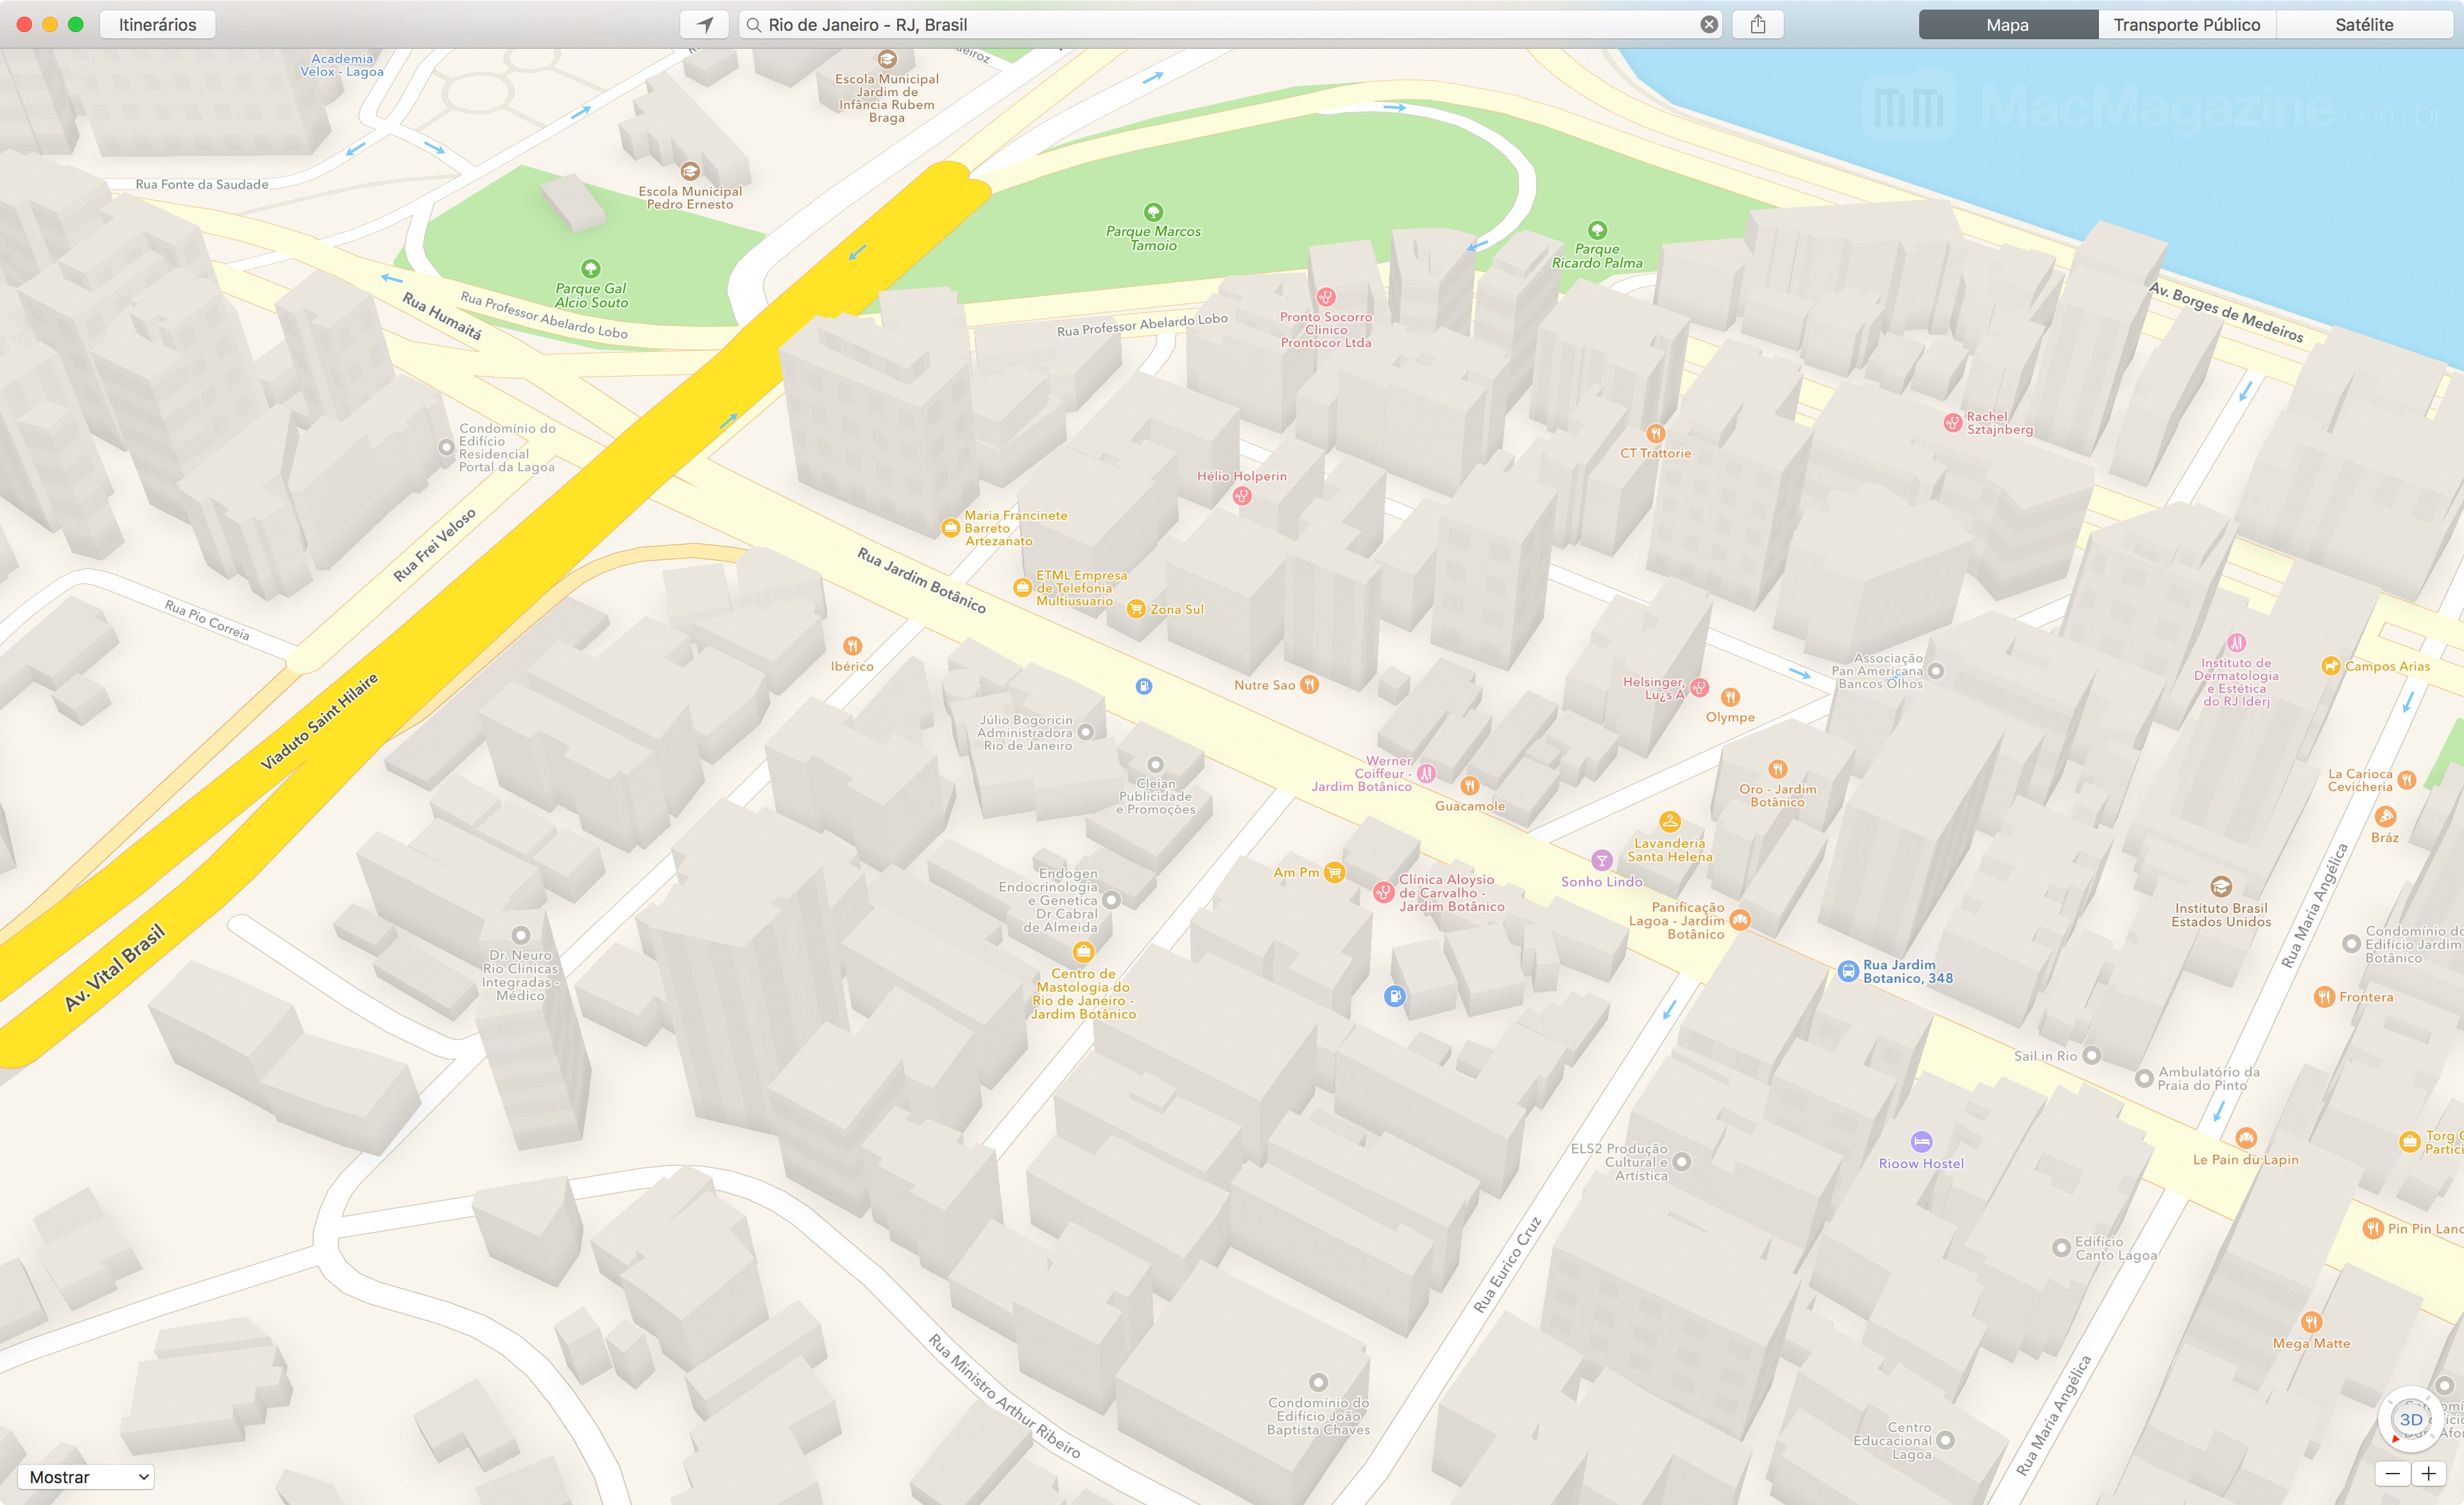 Mapas do Rio de Janeiro em 3D